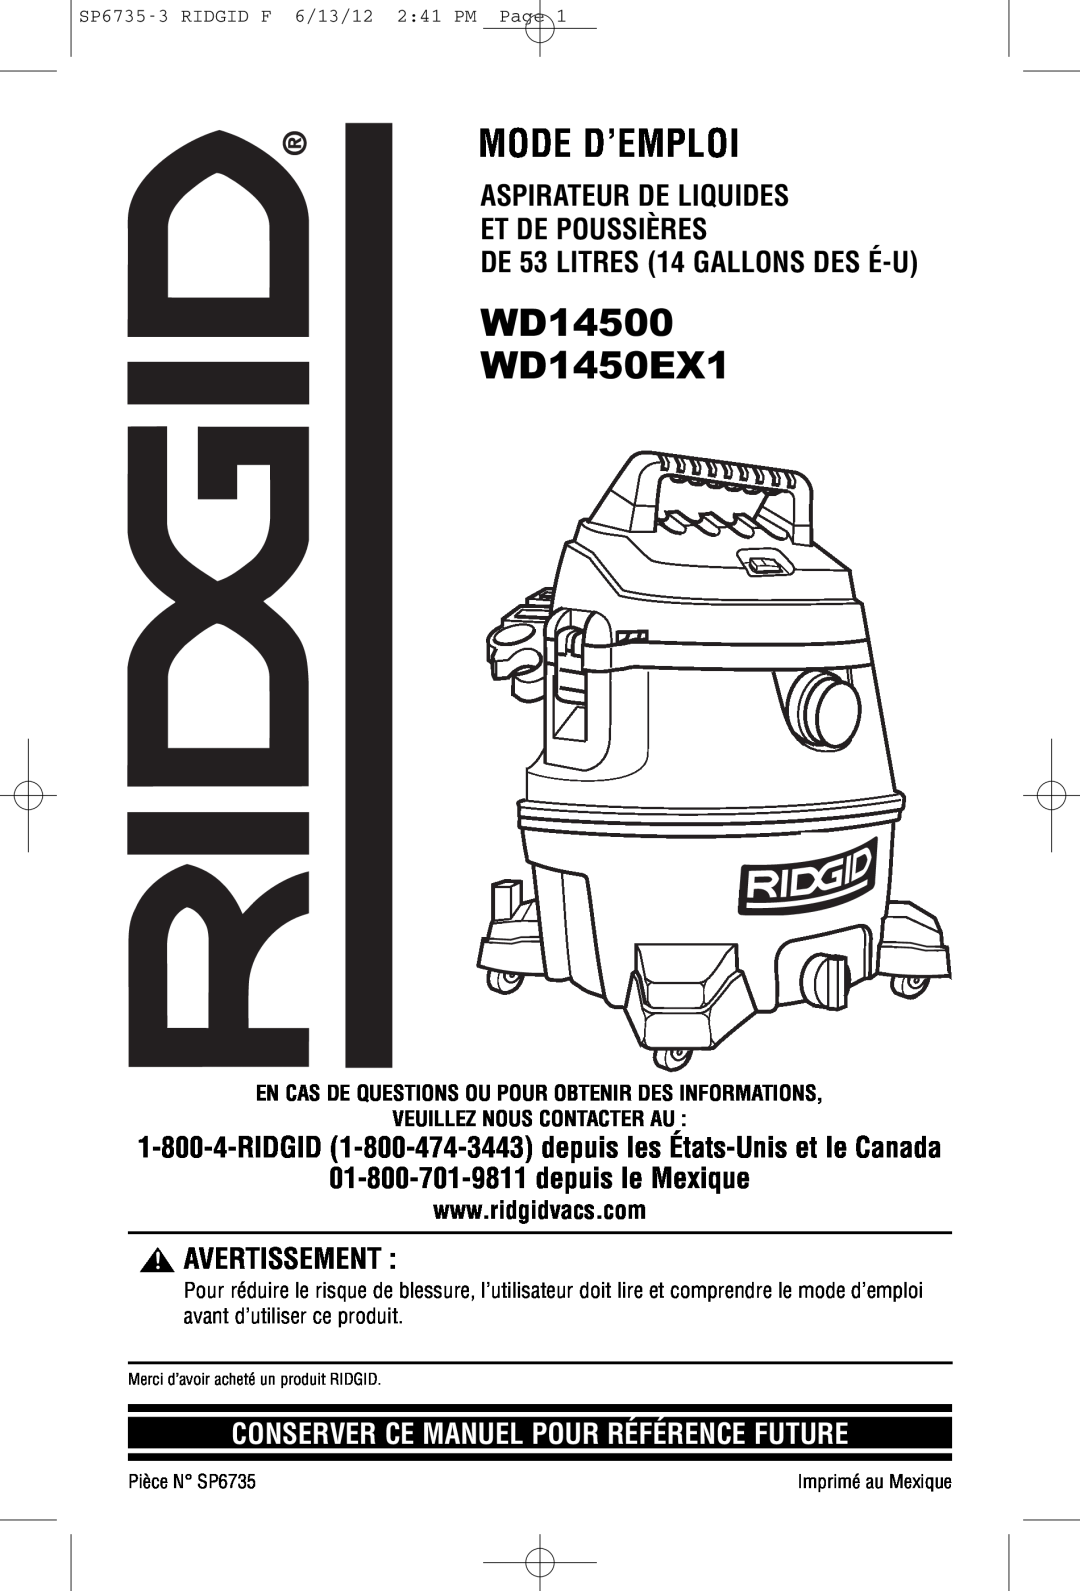 RIDGID WD14500 Mode D’Emploi, Aspirateur De Liquides Et De Poussières, DE 53 LITRES 14 GALLONS DES É-U, Avertissement 